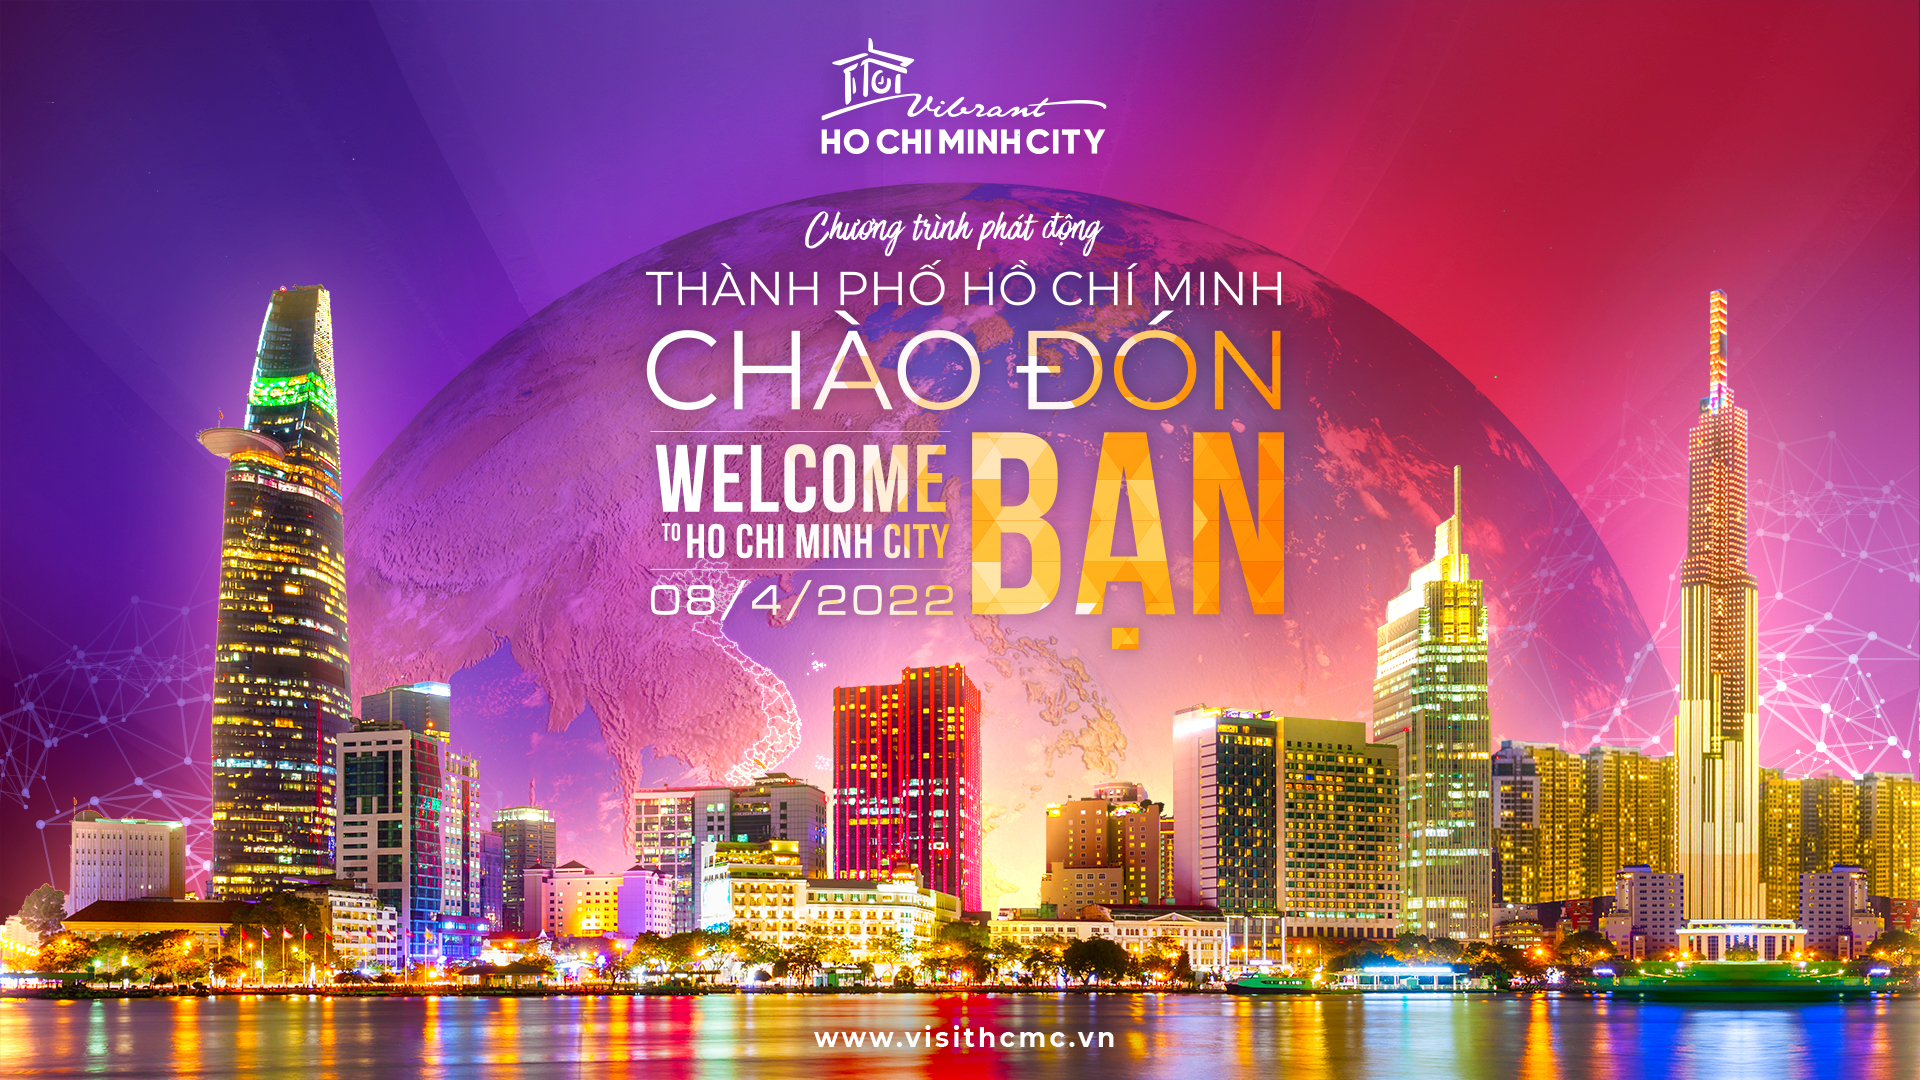 “TPHCM Chào đón bạn - Welcome to Ho Chi Minh City” - lời chào và cũng là tình cảm, sự sẵn sàng của TPHCM gửi đến khách du lịch trong và ngoài nước.